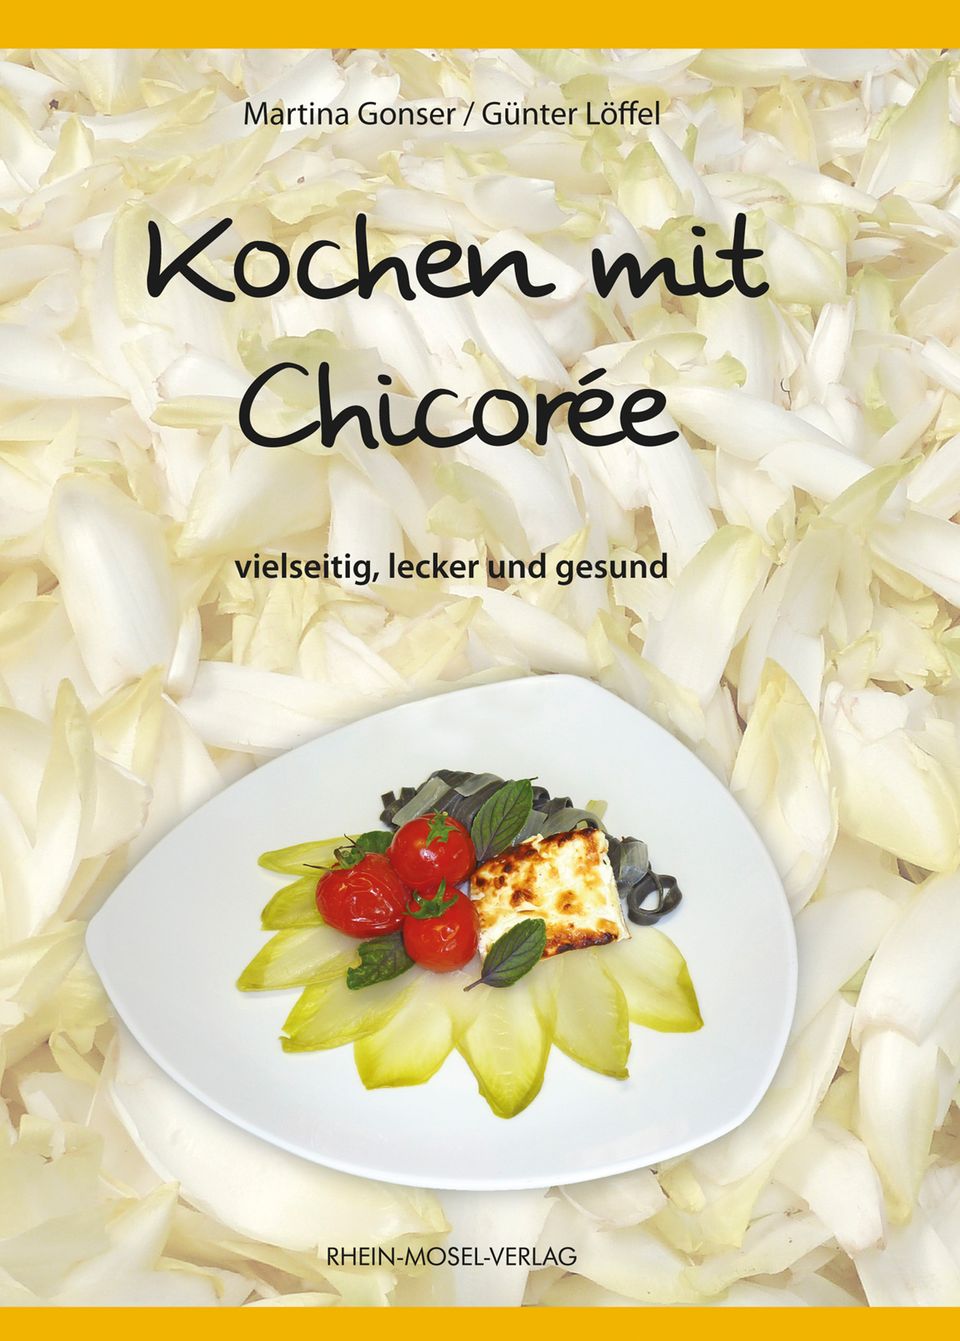 Buch: Kochen mit Chicorée